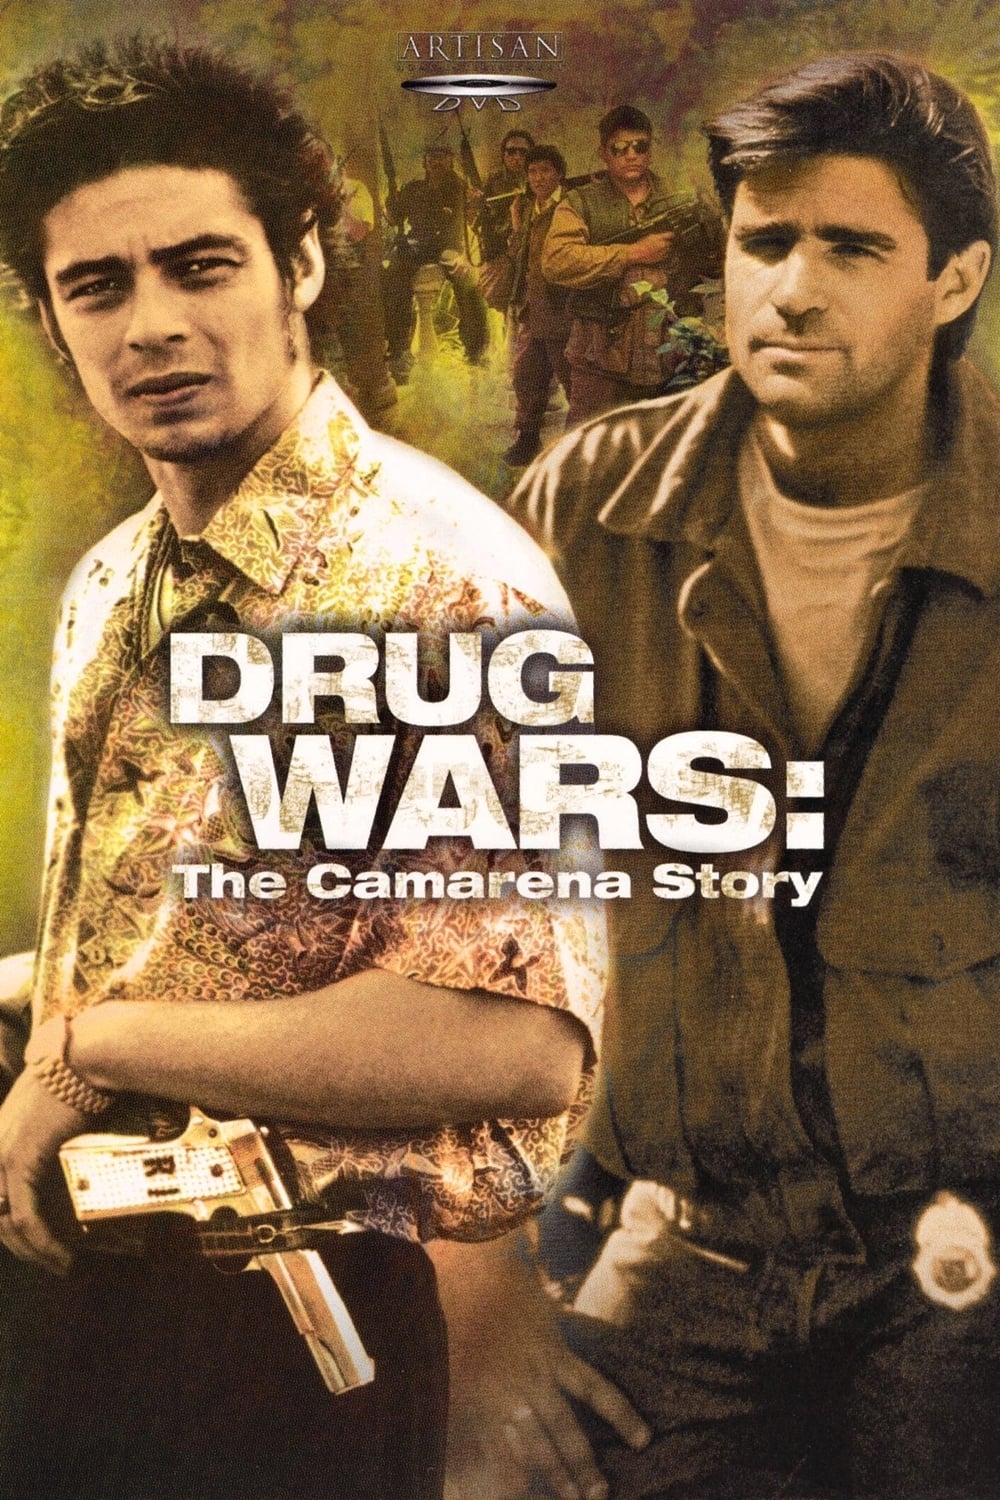 Drug Wars: The Camarena Story TV Shows About Drug Trafficking